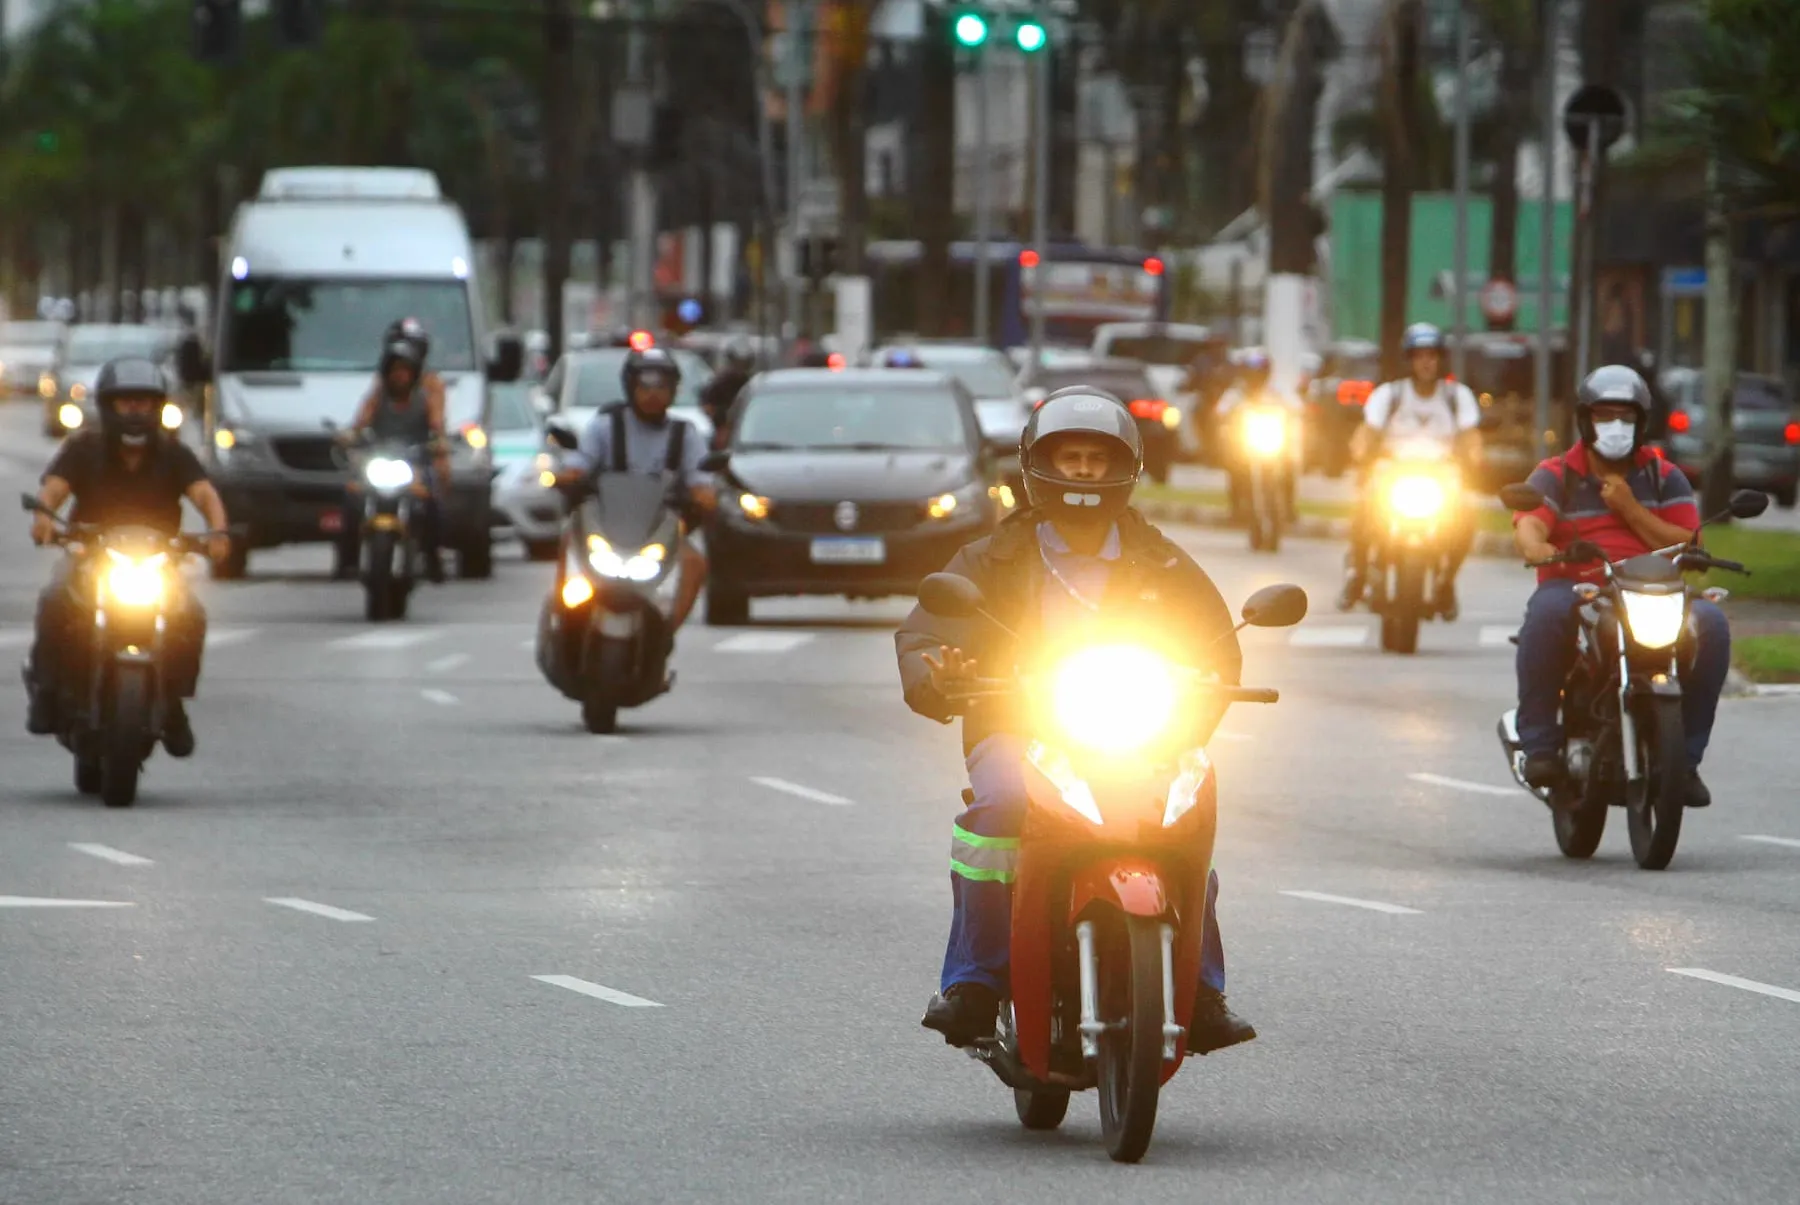 A economia de combustível e a rapidez no deslocamento levam mais pessoas a investir em motos